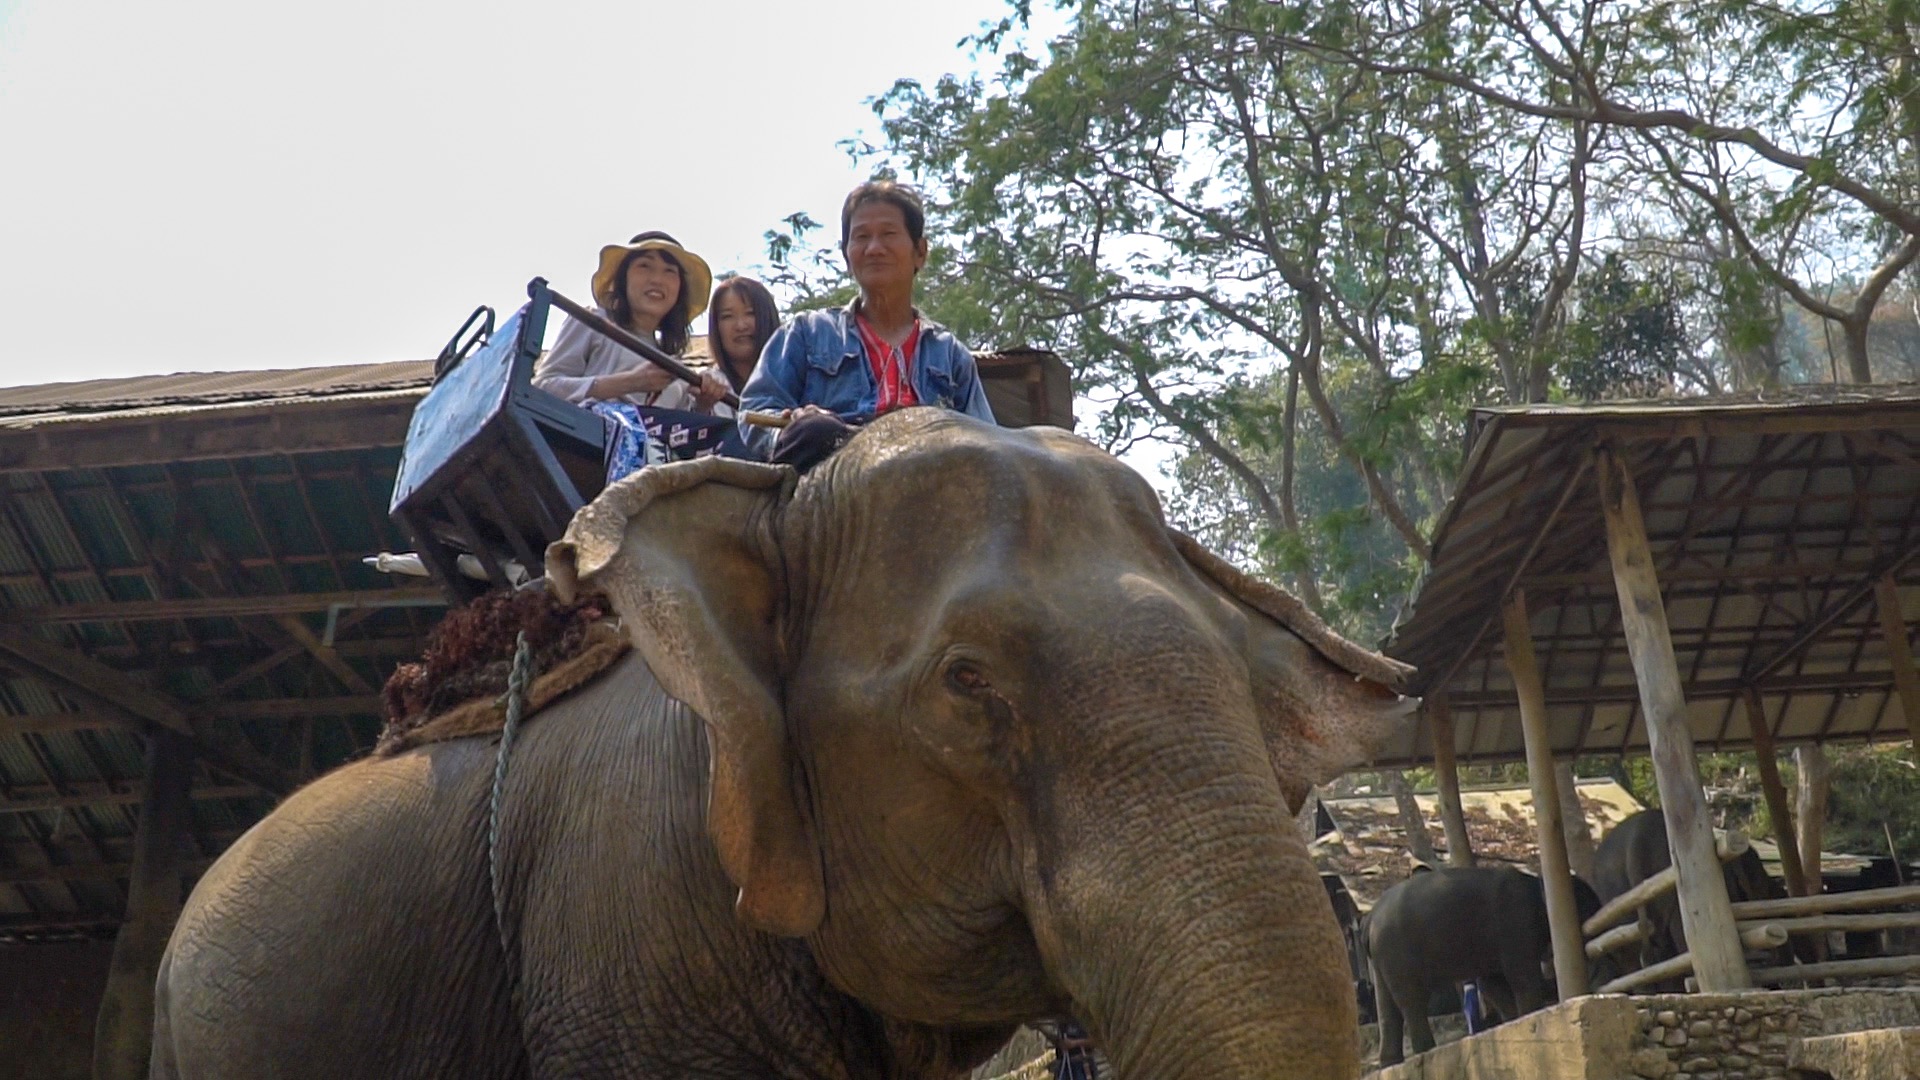 Tourist on an elephant ride - Elephant Riding